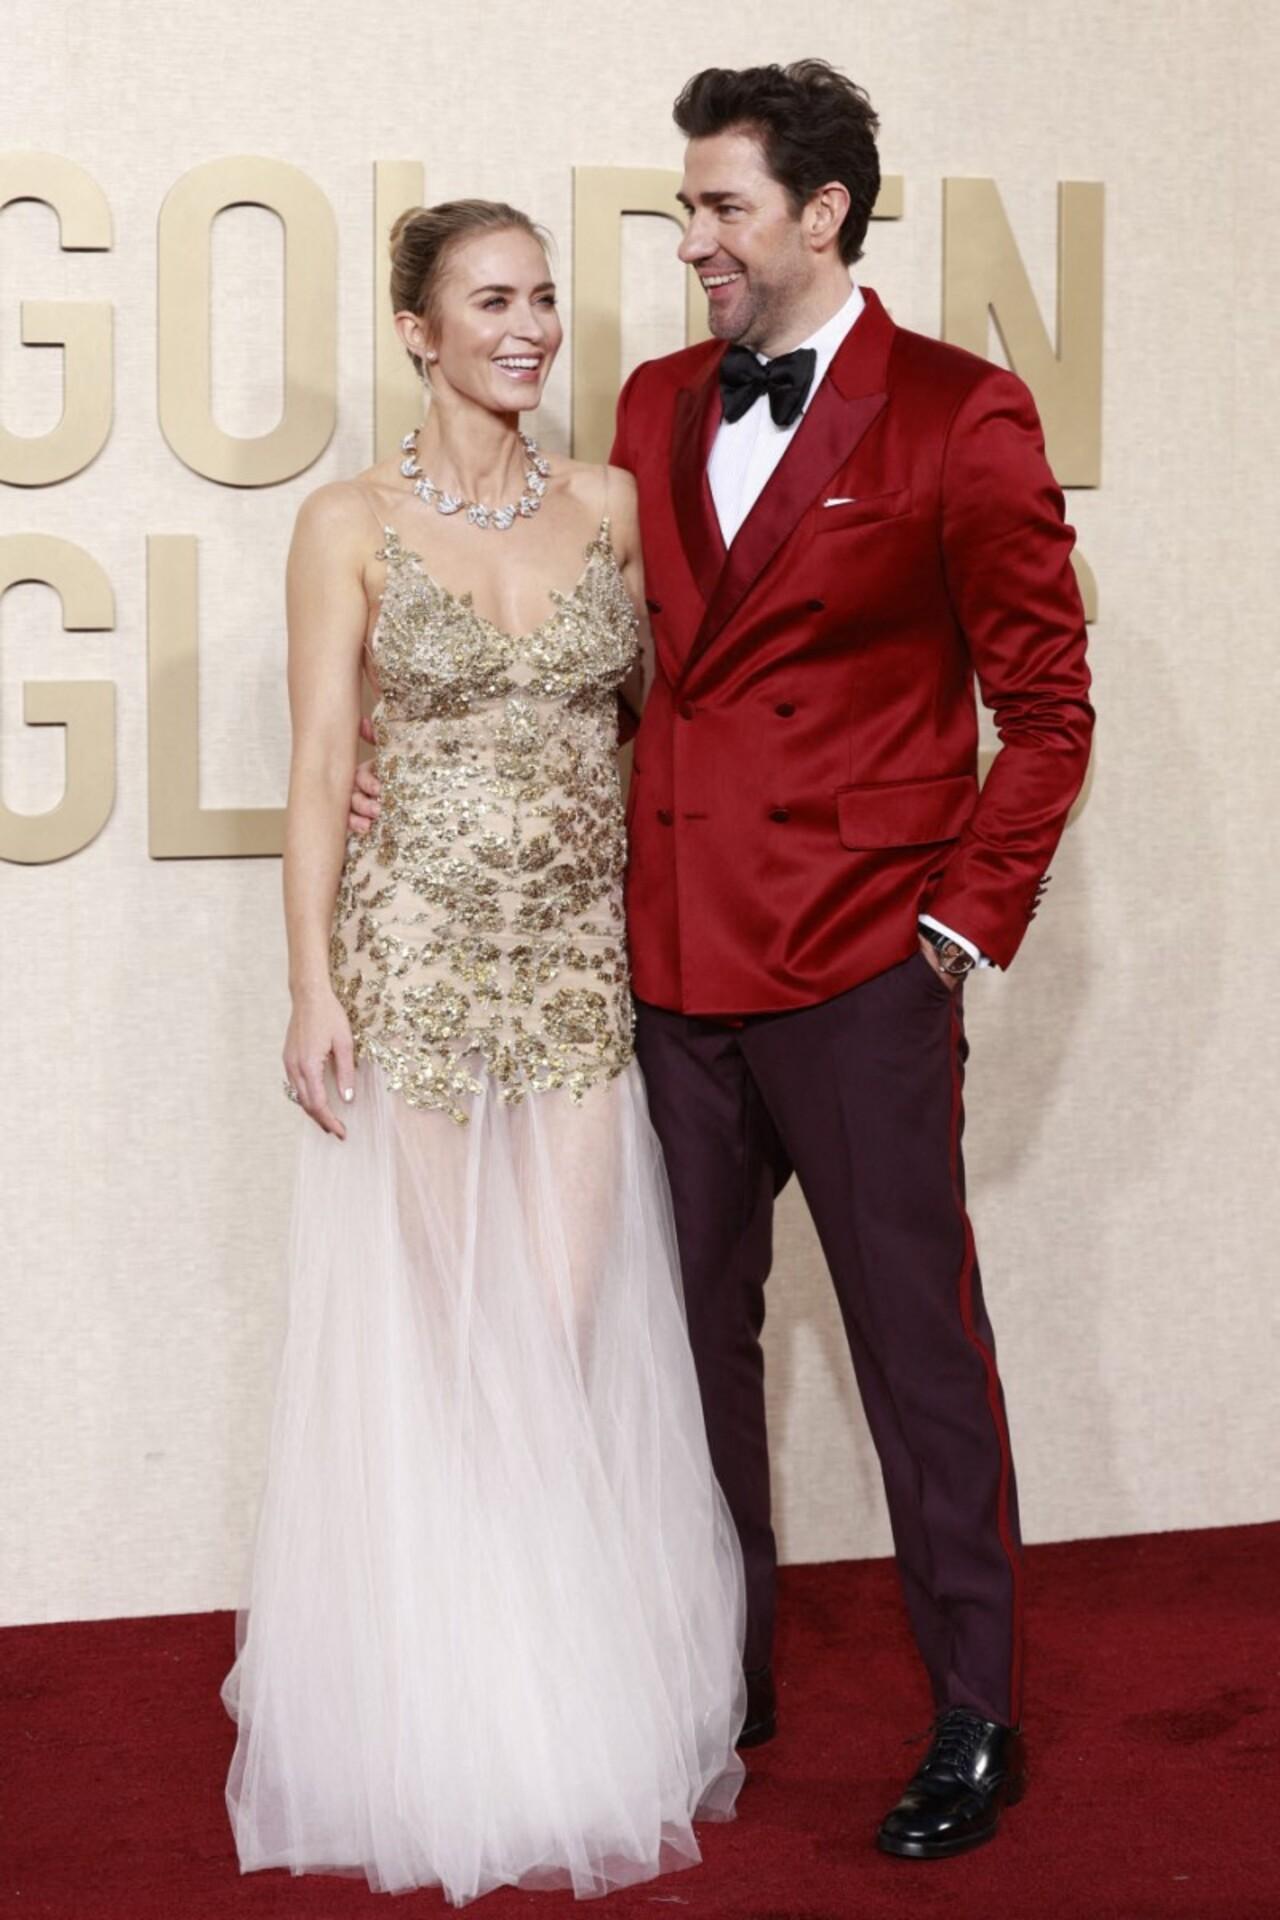 Oppenheimer star Emily Blunt graced the red carpet with her husband actor John Krasinki